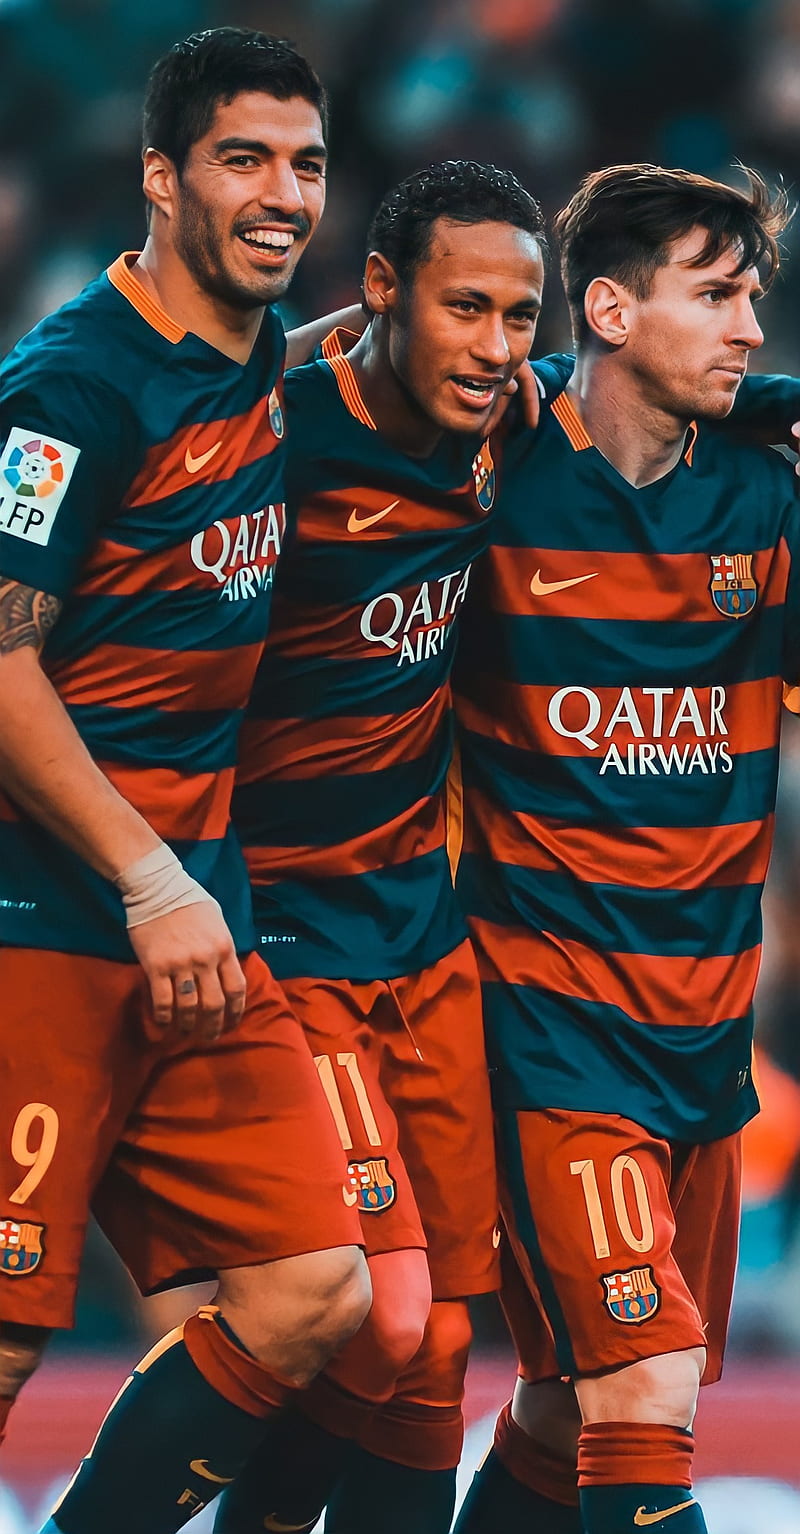 MSN: Đây là ba chữ cái viết tắt của ba cầu thủ Barca gồm Messi, Suarez và Neymar. Với sự kết hợp hoàn hảo giữa tốc độ, kỹ thuật, sức mạnh và khả năng xử lý bóng đỉnh cao, MSN đã tạo ra một trong những bộ ba công phá hùm xám kinh điển nhất lịch sử bóng đá. Hãy xem hình ảnh của họ để cảm nhận được sự hoàn hảo của bộ ba này.